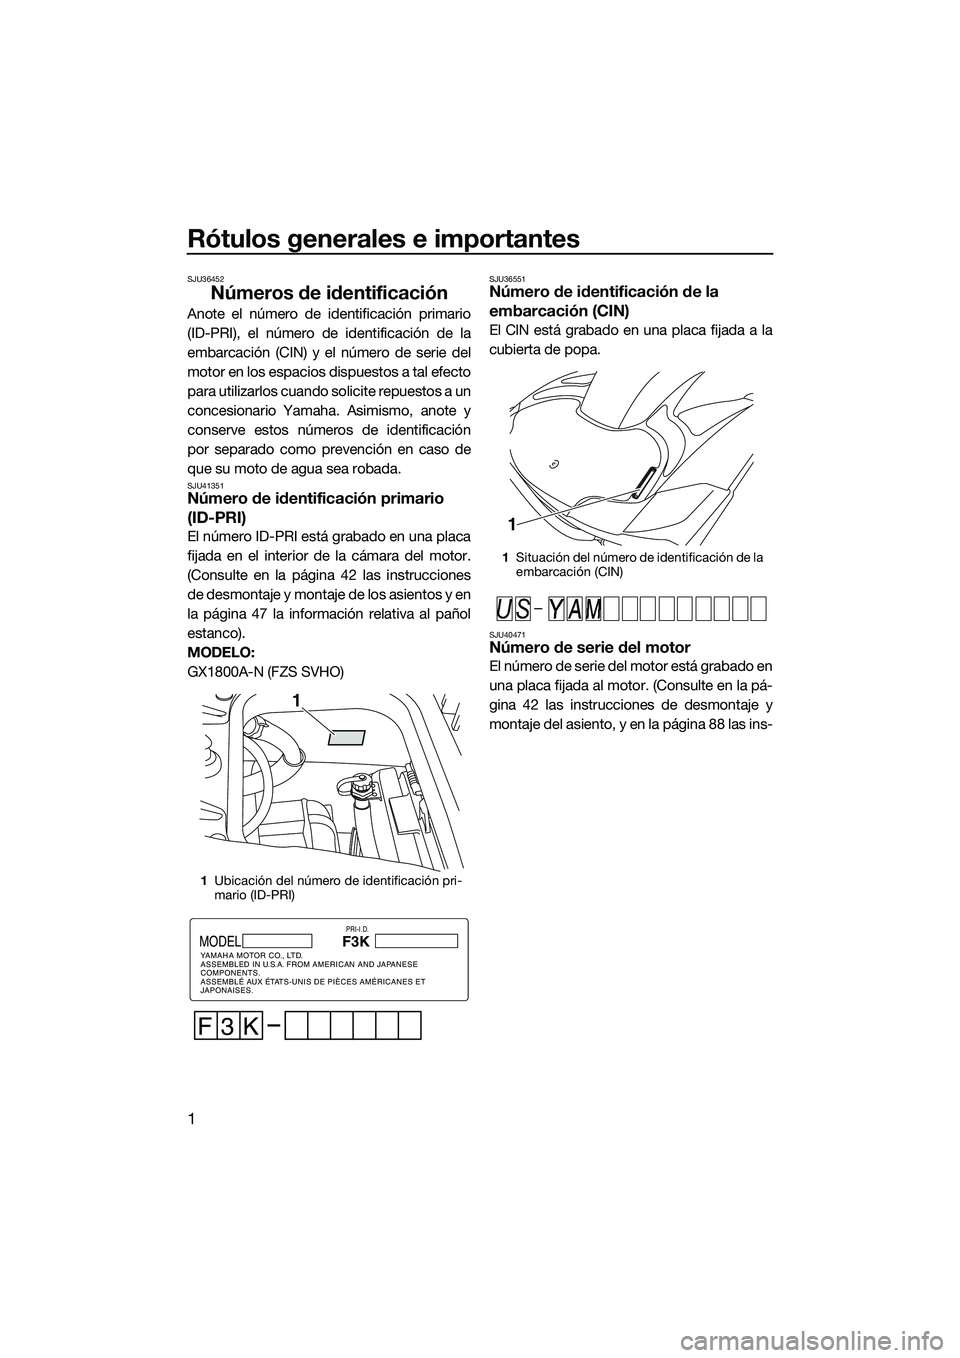 YAMAHA FZS SVHO 2014  Manuale de Empleo (in Spanish) Rótulos generales e importantes
1
SJU36452
Números de identificación
Anote el número de identificación primario
(ID-PRI), el número de identificación de la
embarcación (CIN) y el número de se